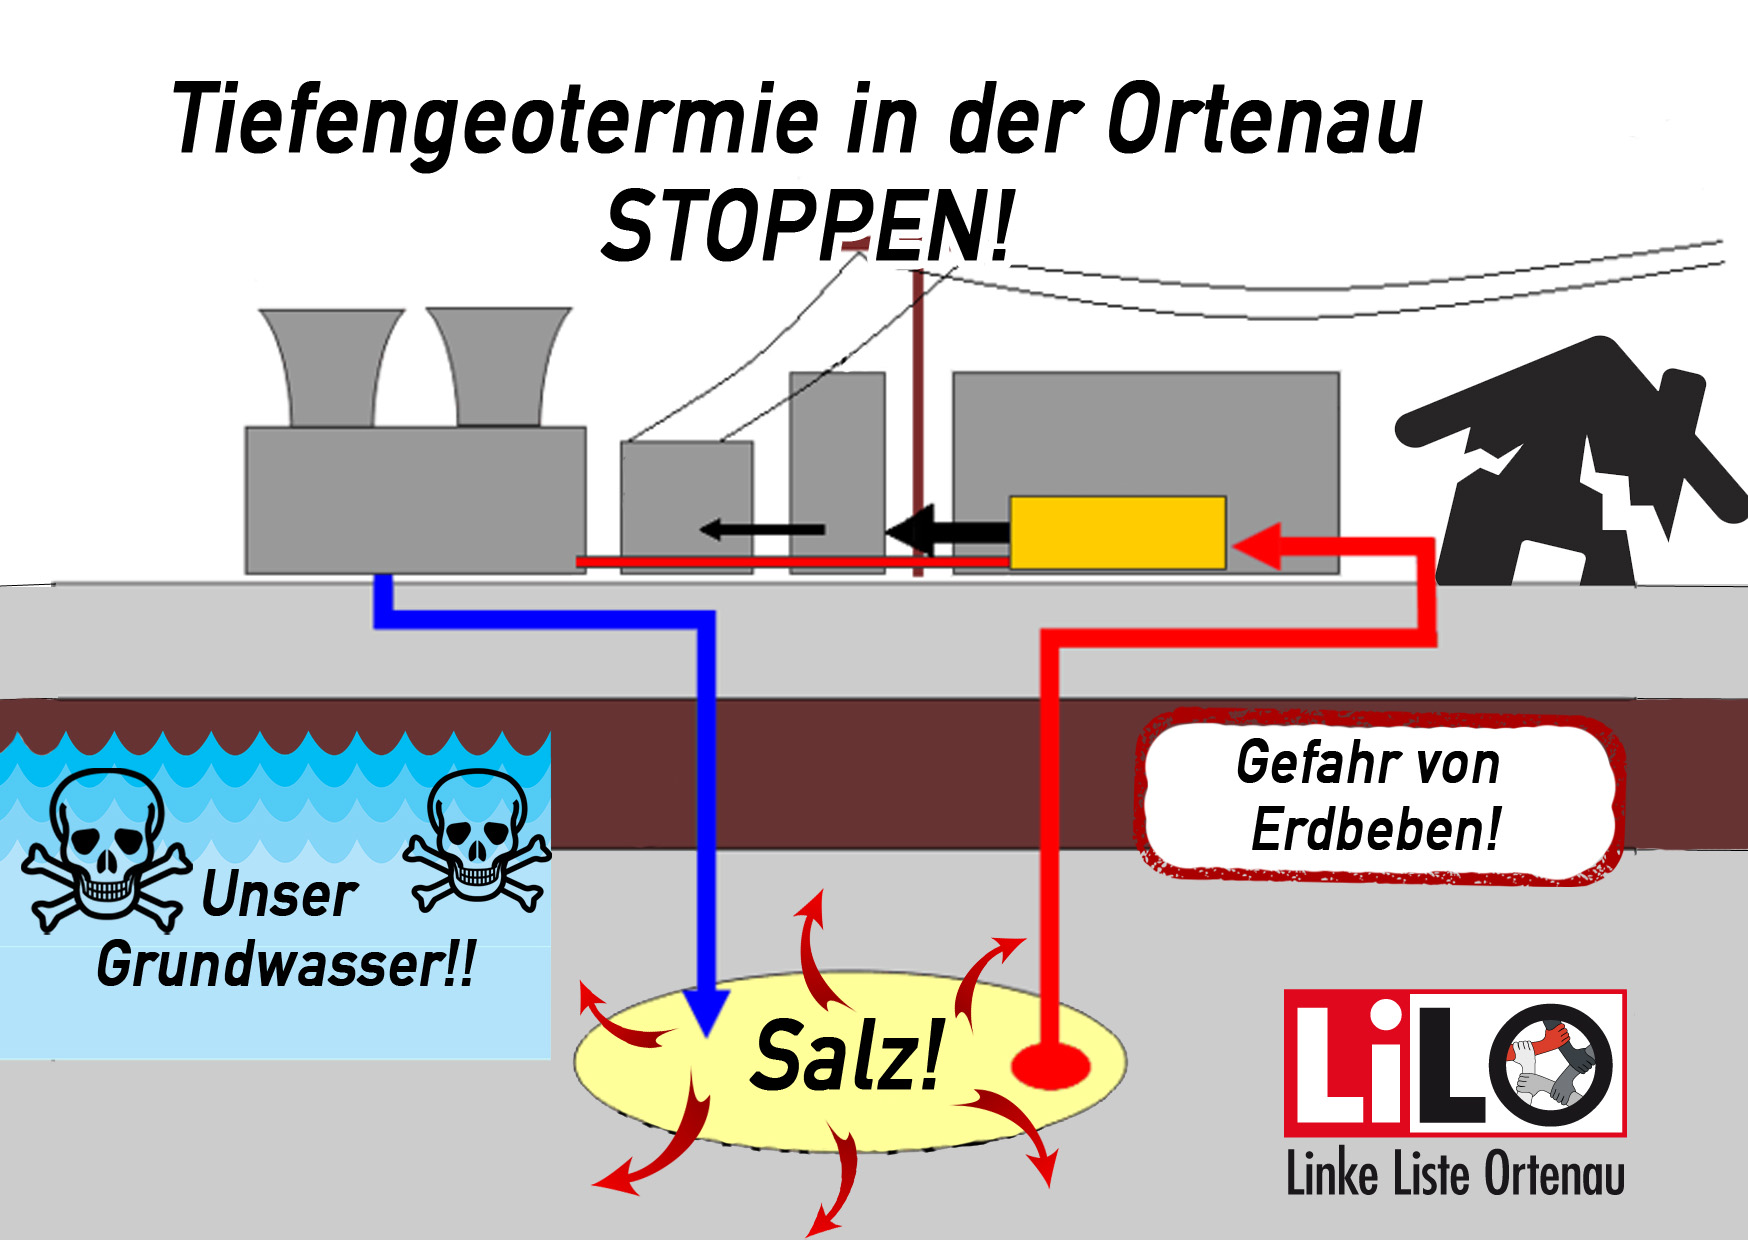 Linke Liste Ortenau - LiLO
Tiefengeothermie in der Ortenau stoppen! Gefahr von Erdbeben!